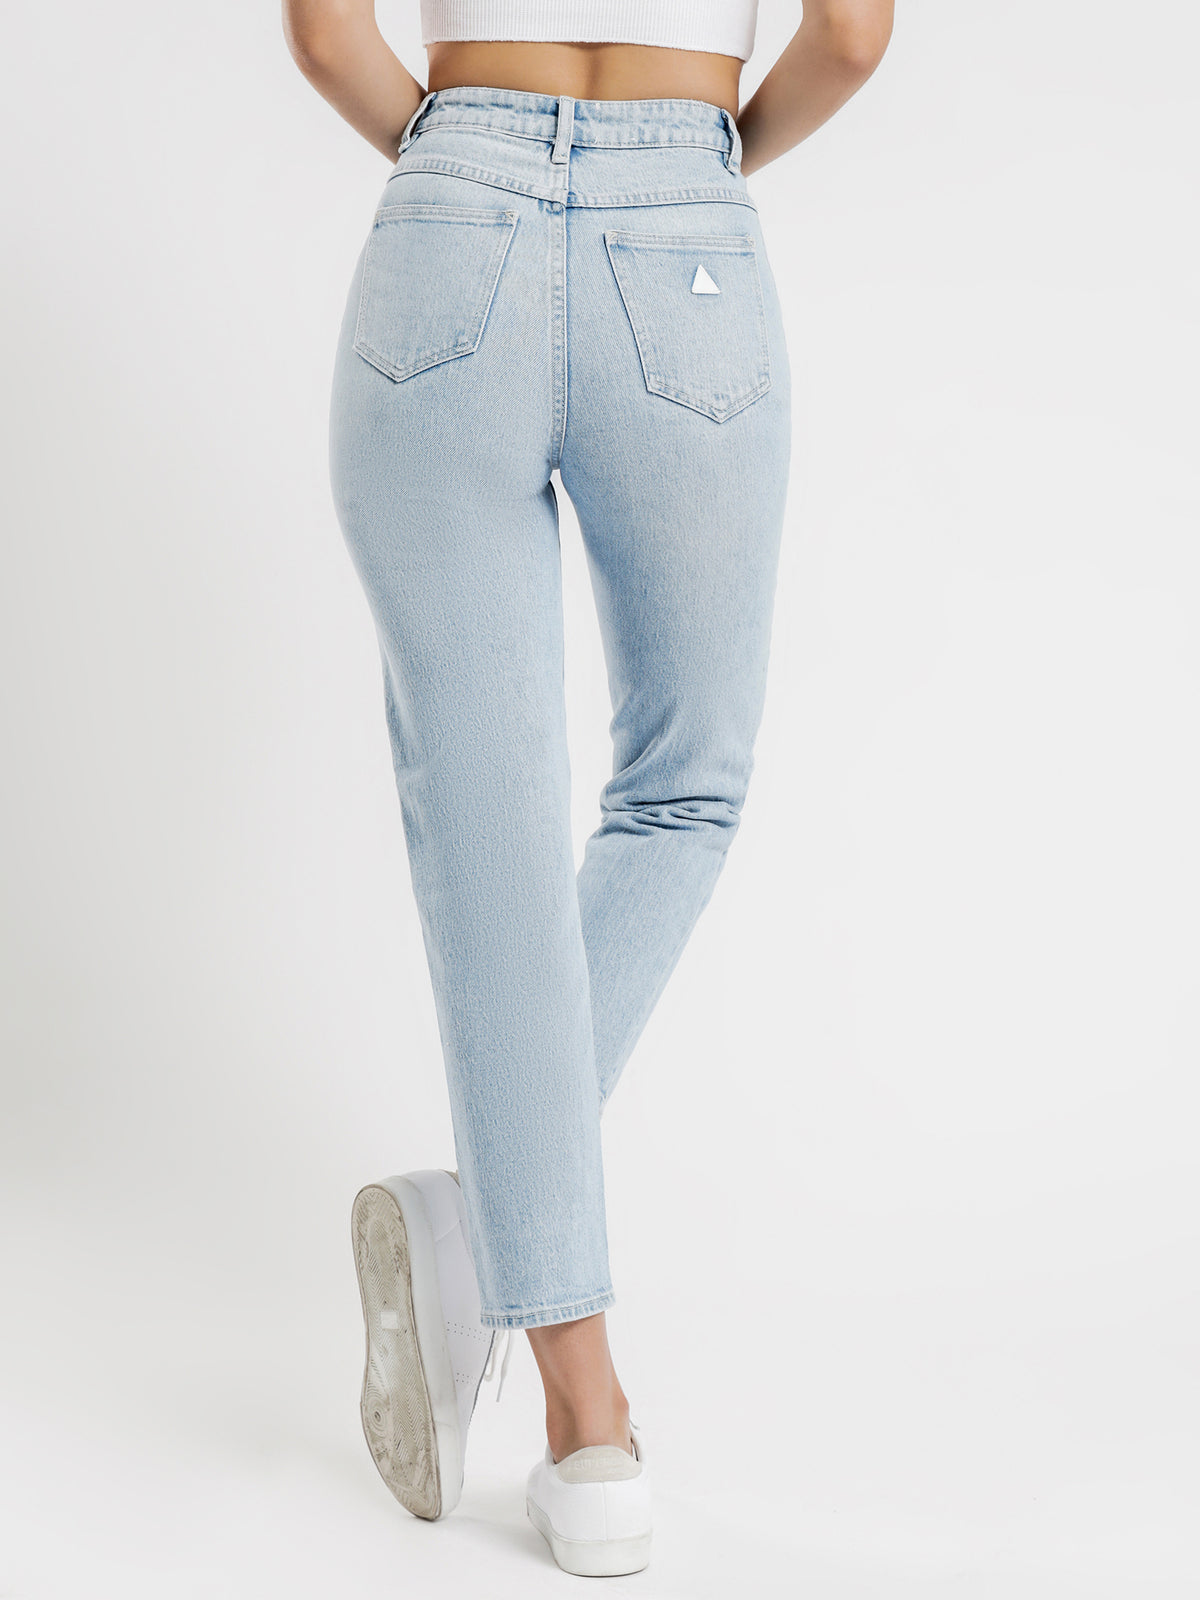 94 High Slim Jeans in Gina Blue Denim